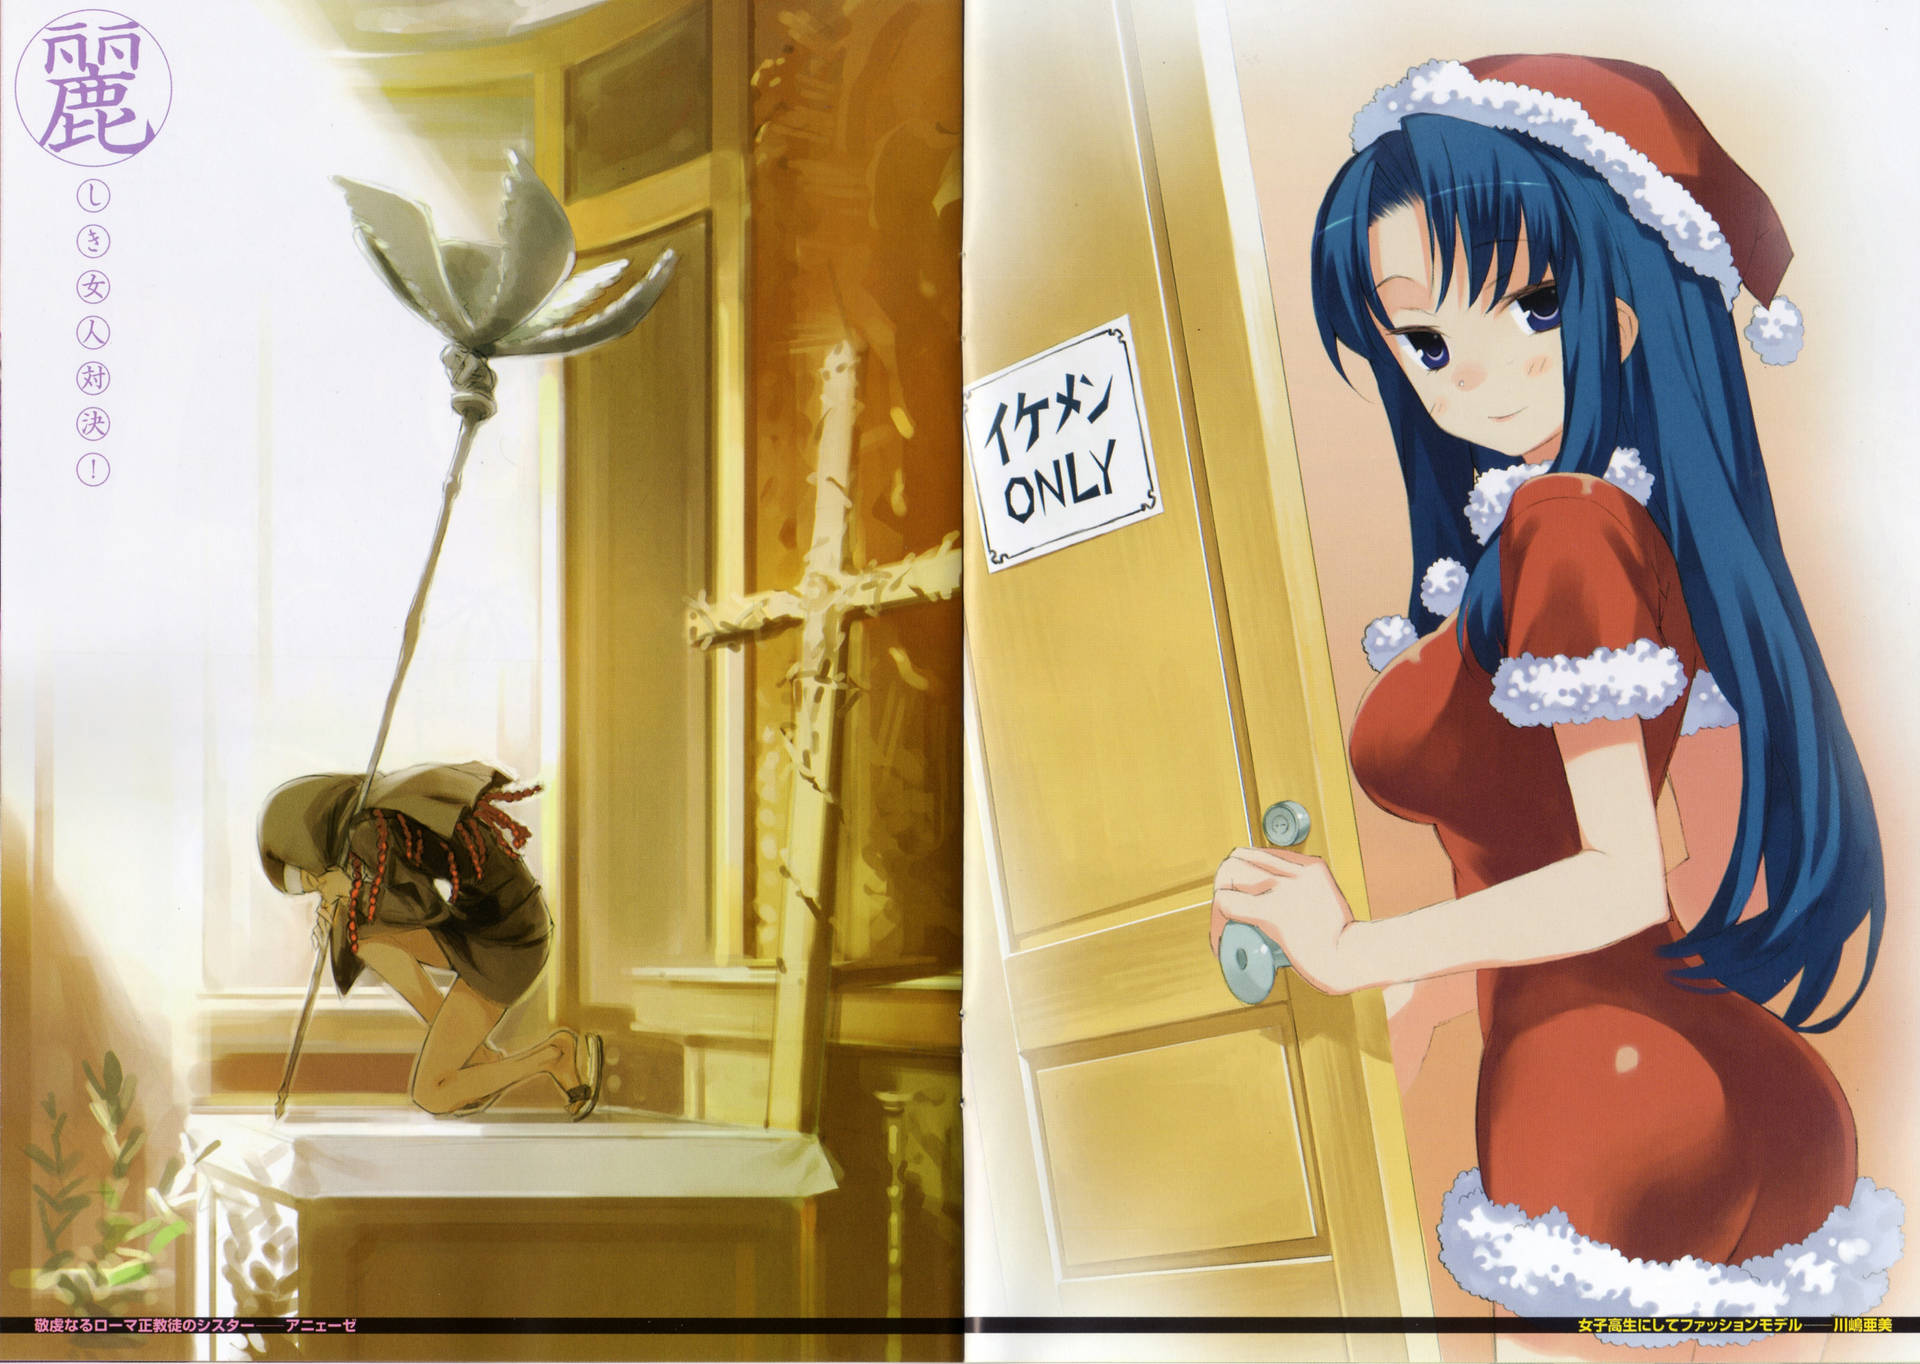 Ami Kawashima Anime Girl In Christmas Outfit Wallpaper